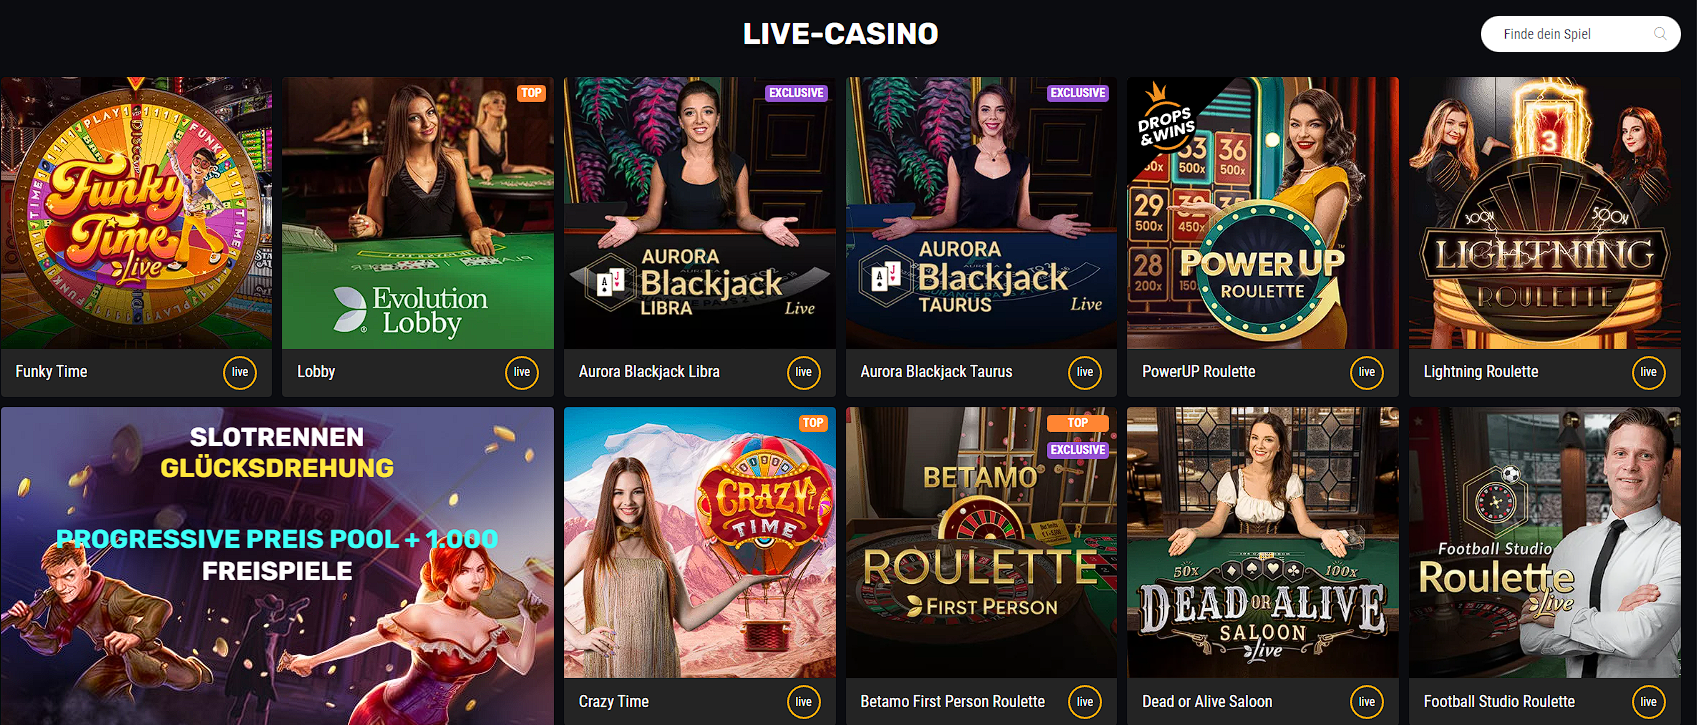 Betamo Casino Review with Bonus Codes